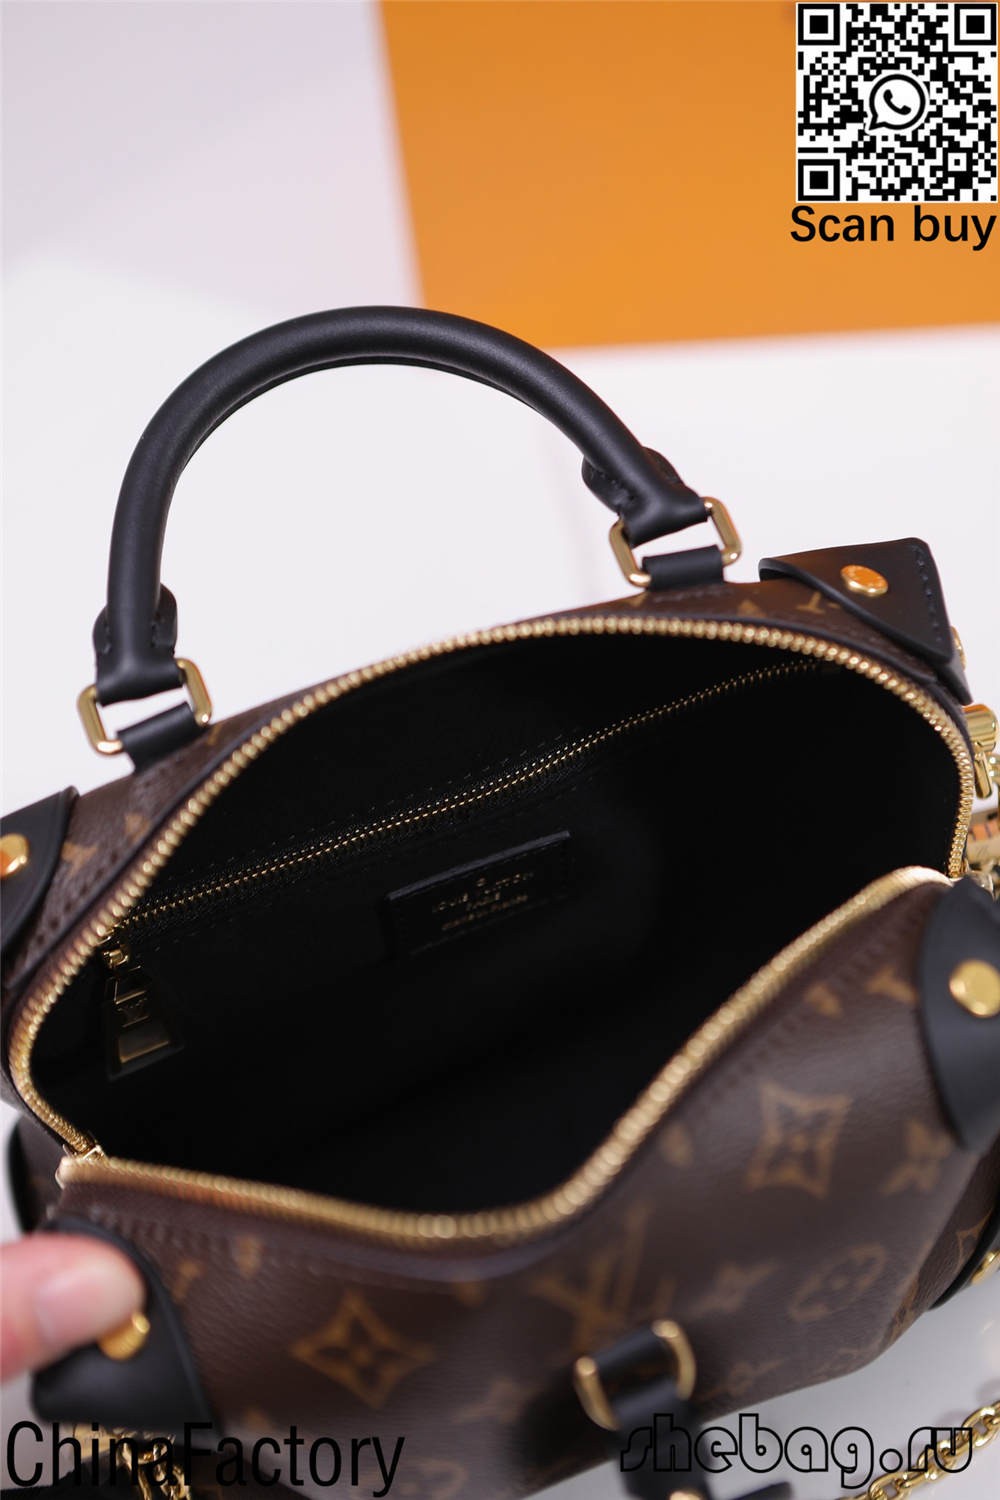 Louis Vuitton alma taske replika køb (2022 ny udgave)-Bedste kvalitet falsk Louis Vuitton taske online butik, Replica designer taske ru